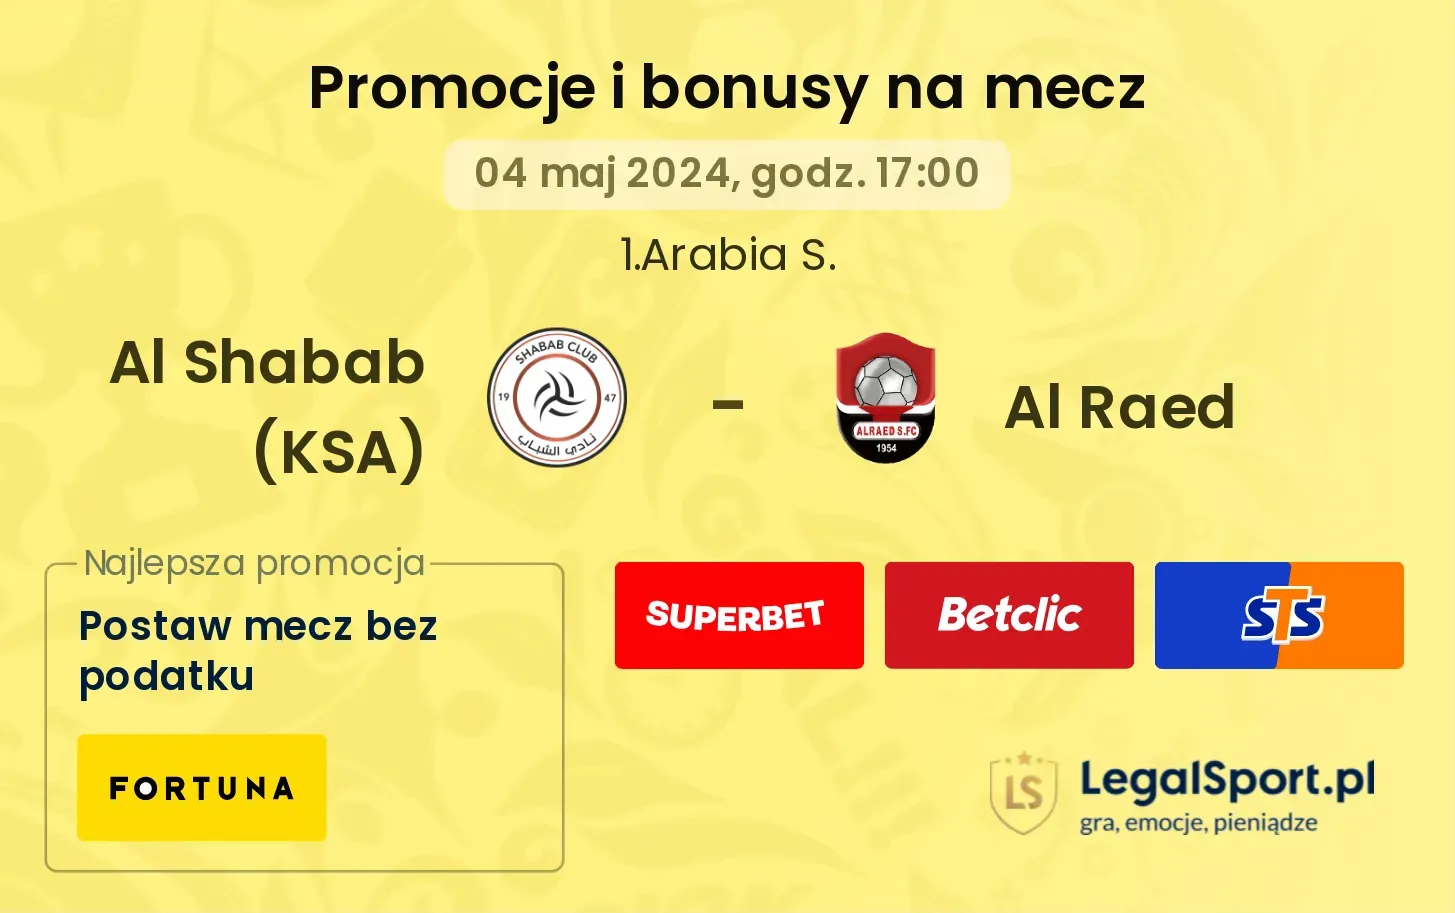 Al Shabab (KSA) - Al Raed promocje bonusy na mecz